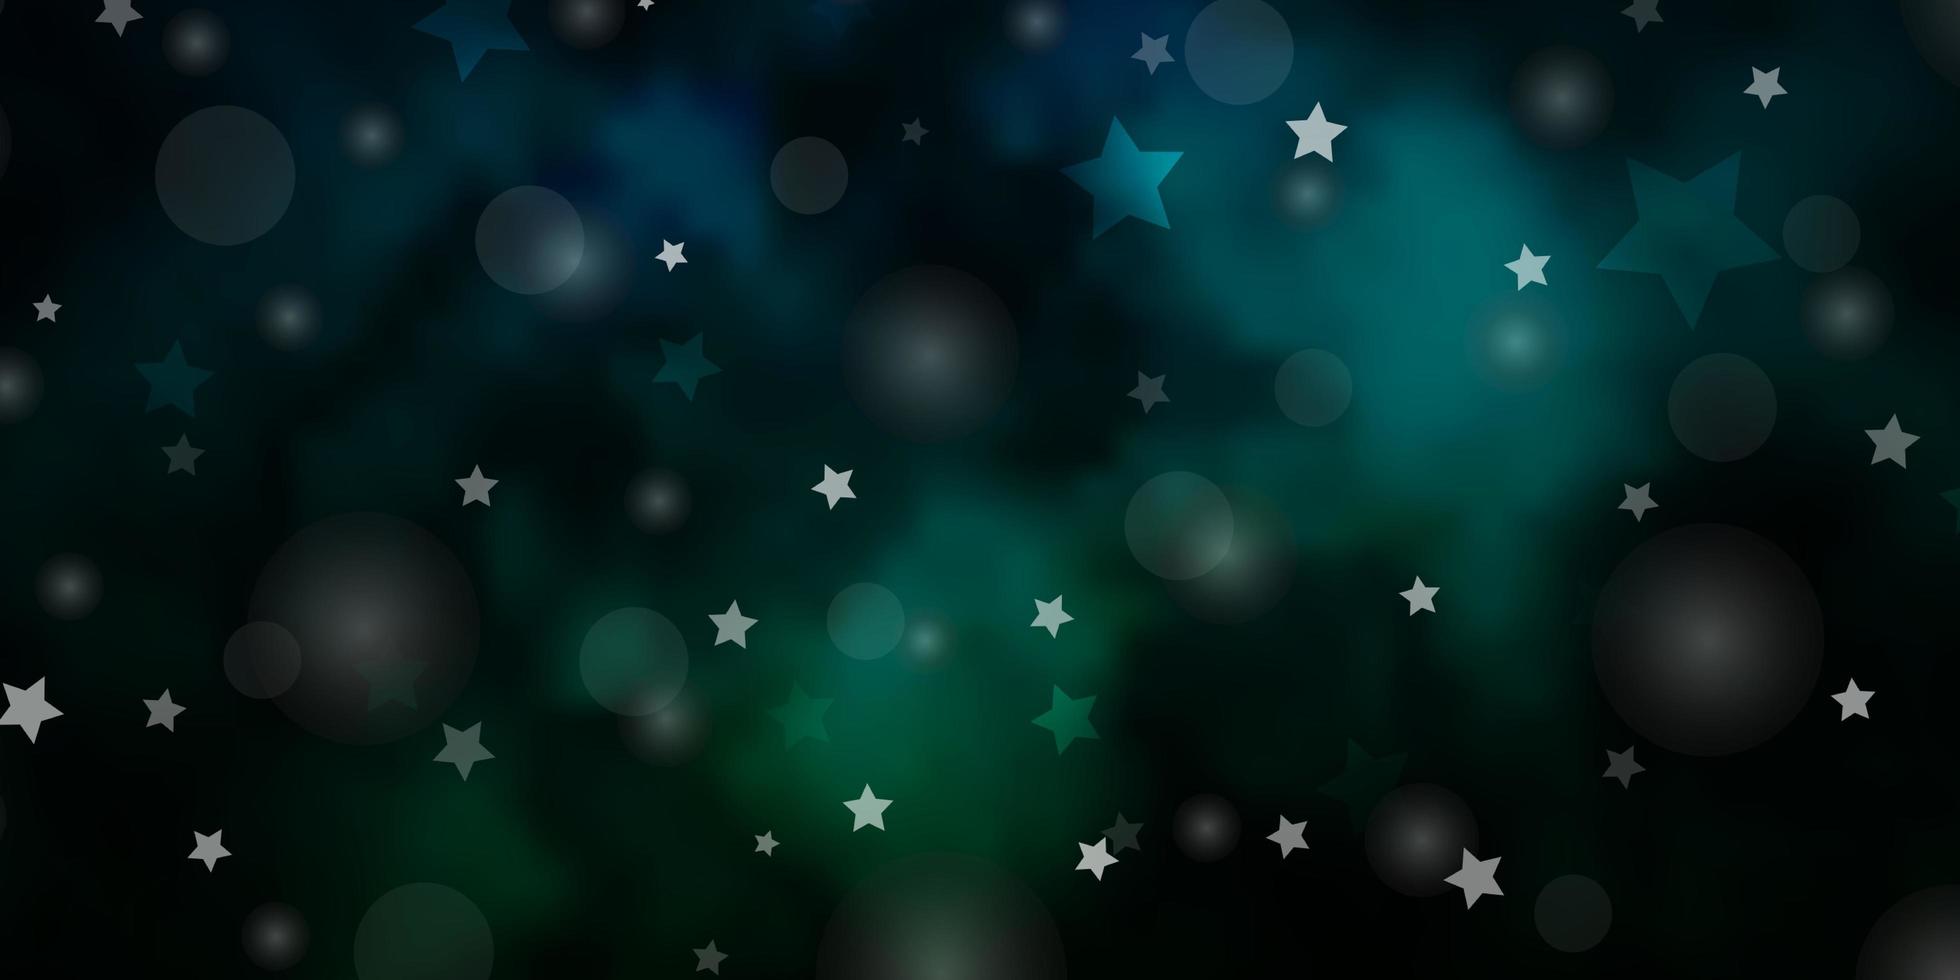 modèle vectoriel bleu foncé, vert avec des cercles, des étoiles. conception abstraite dans un style dégradé avec des bulles, des étoiles. texture pour stores, rideaux.